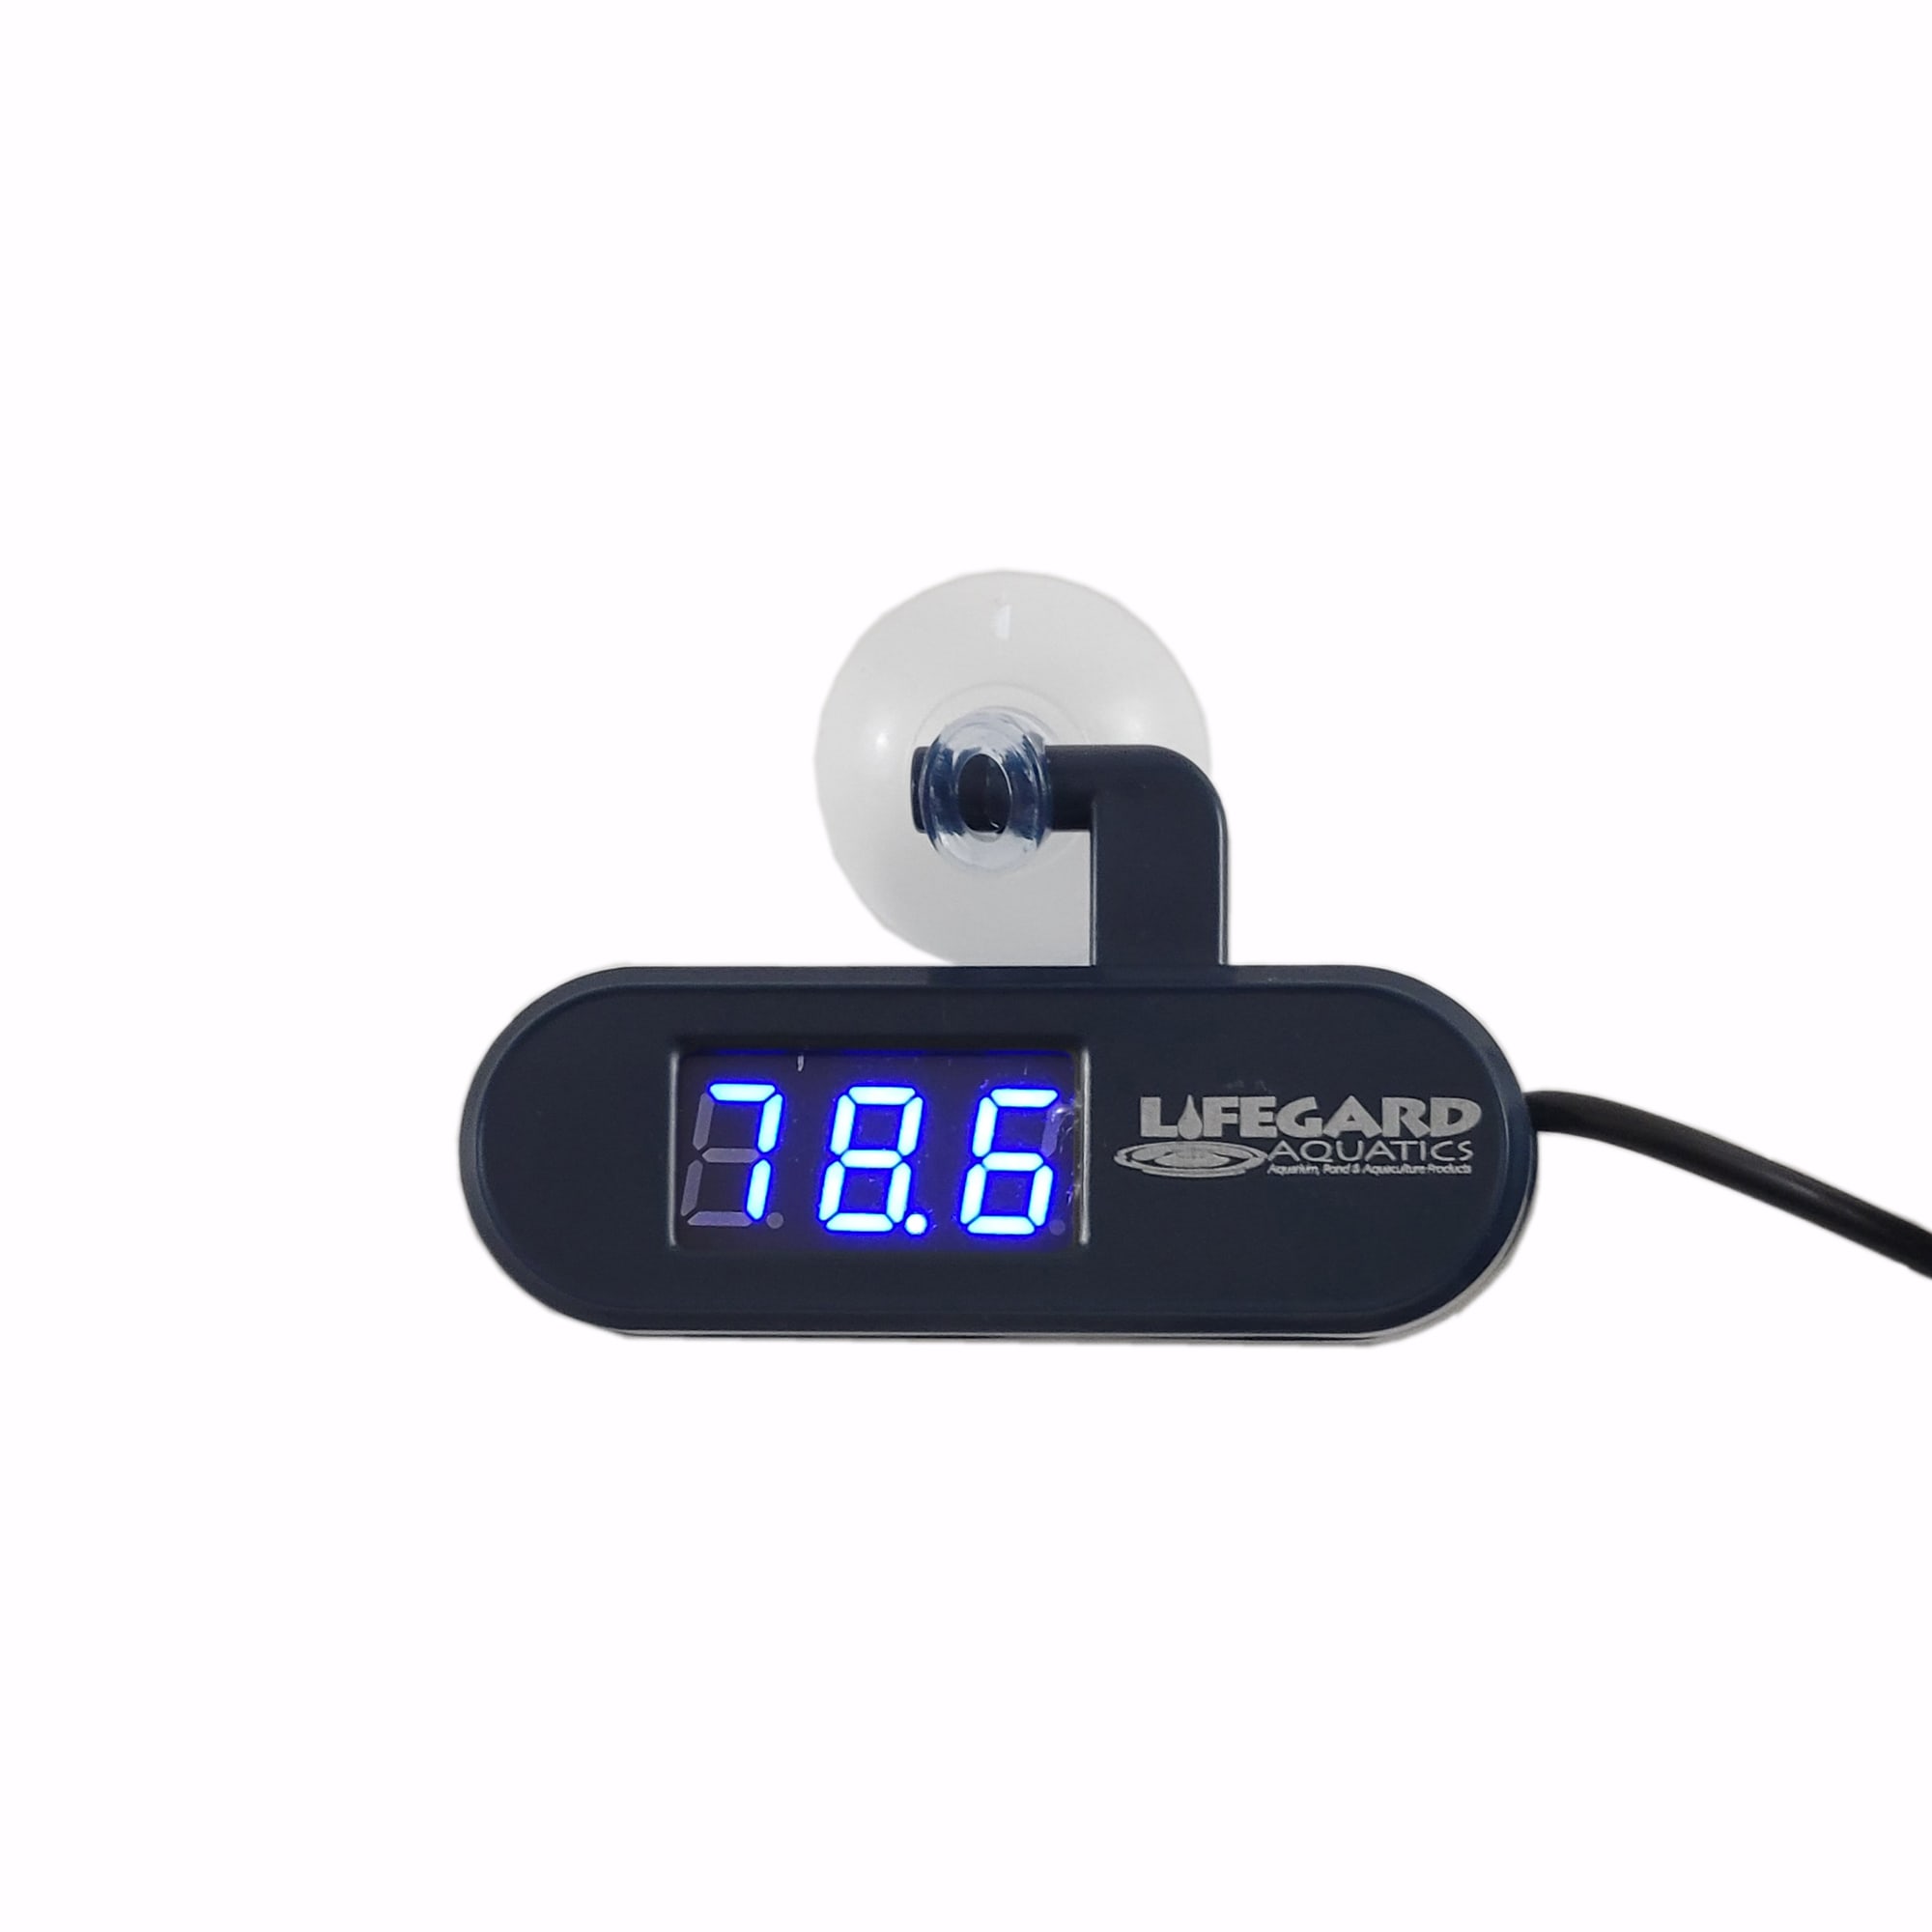 YHDTH-74 Digital Aquarium Pet Incubator Thermometer Indoor and